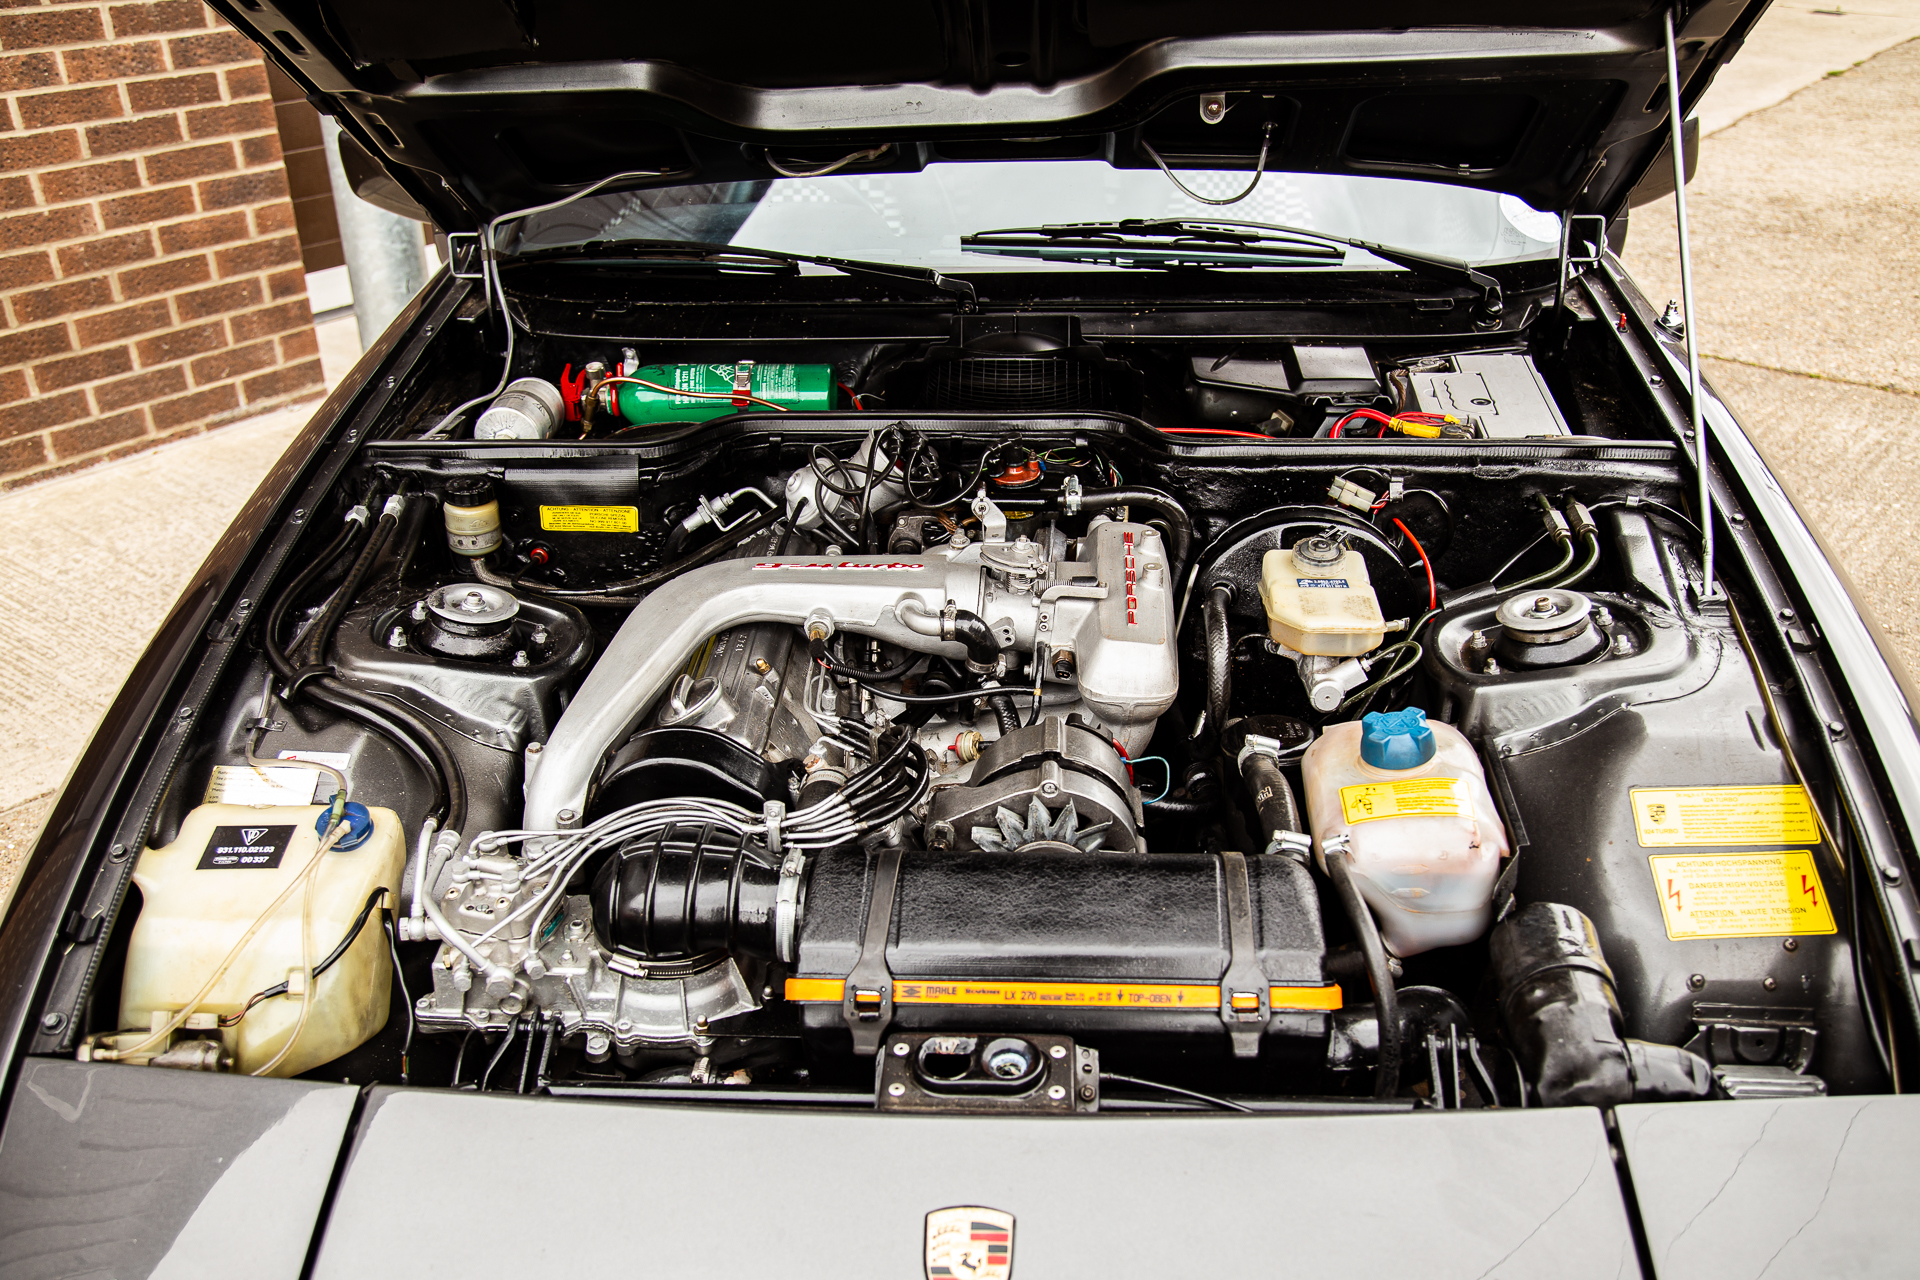 Porsche 924 Turbo engine bay